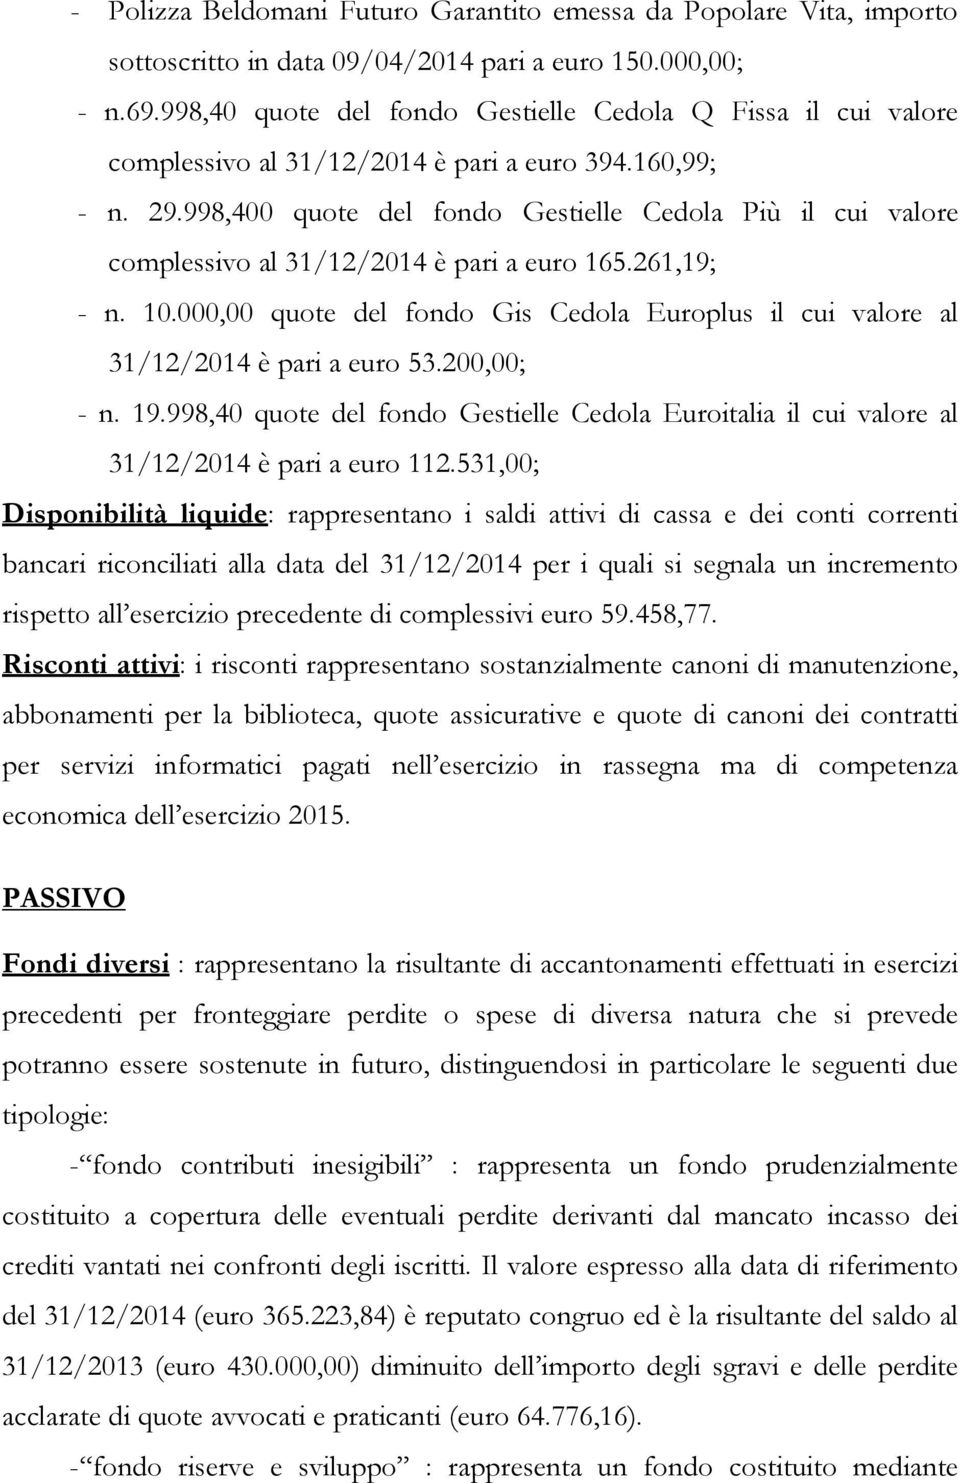 998,400 quote del fondo Gestielle Cedola Più il cui valore complessivo al 31/12/2014 è pari a euro 165.261,19; - n. 10.